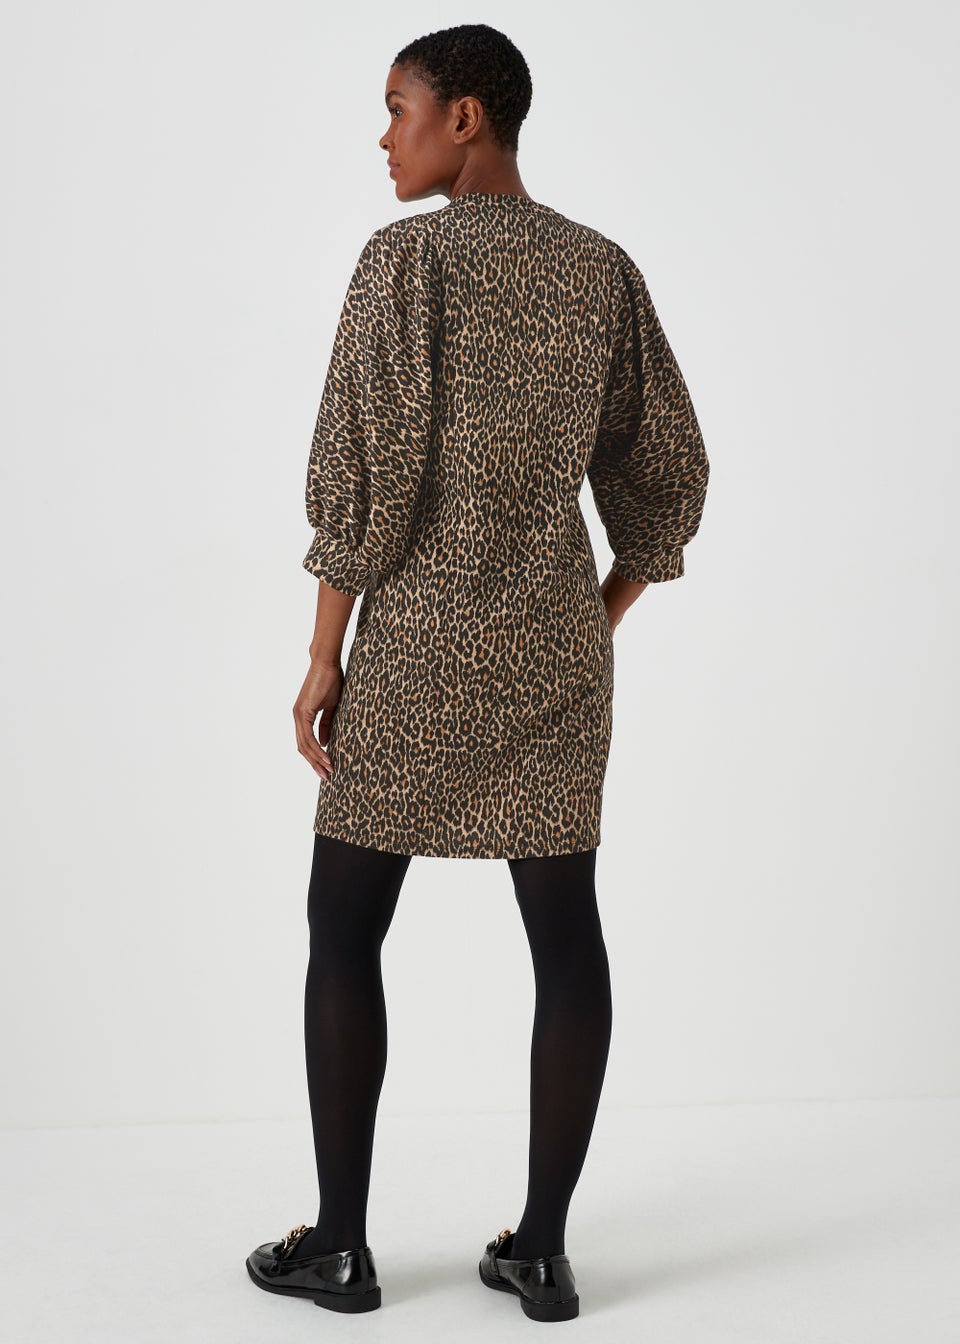 Tan Jacquard Leopard Print Dress